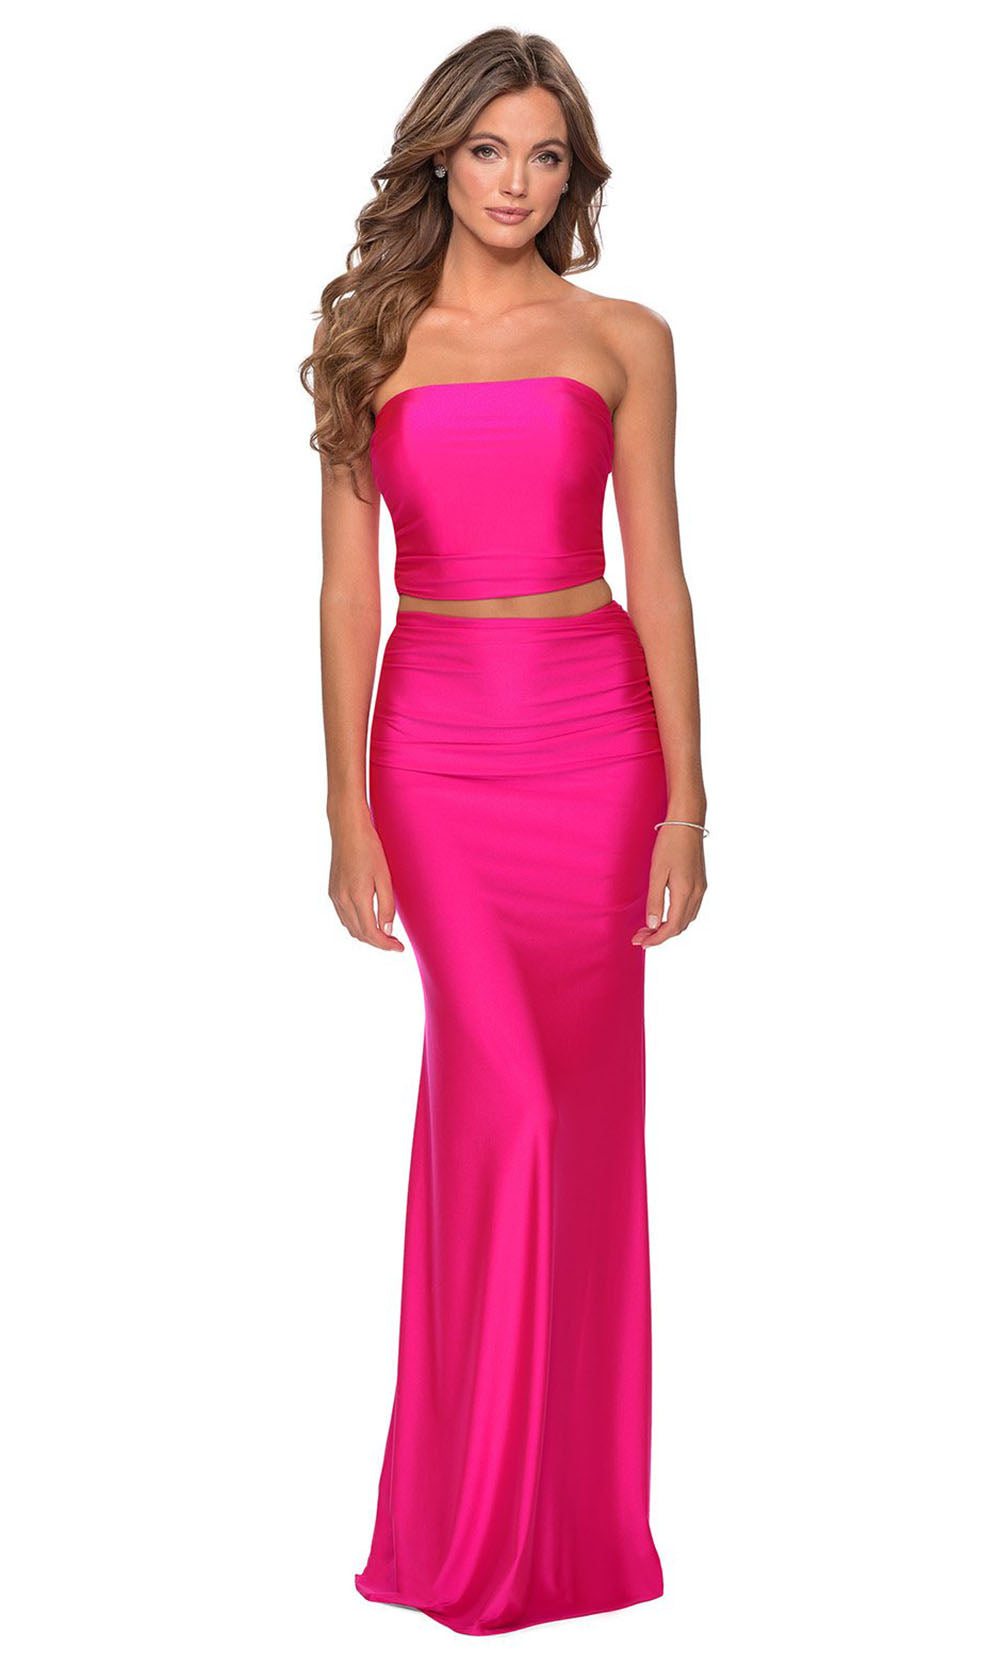 La Femme - 28972 Two-Piece Long Sheath Dress In Pink